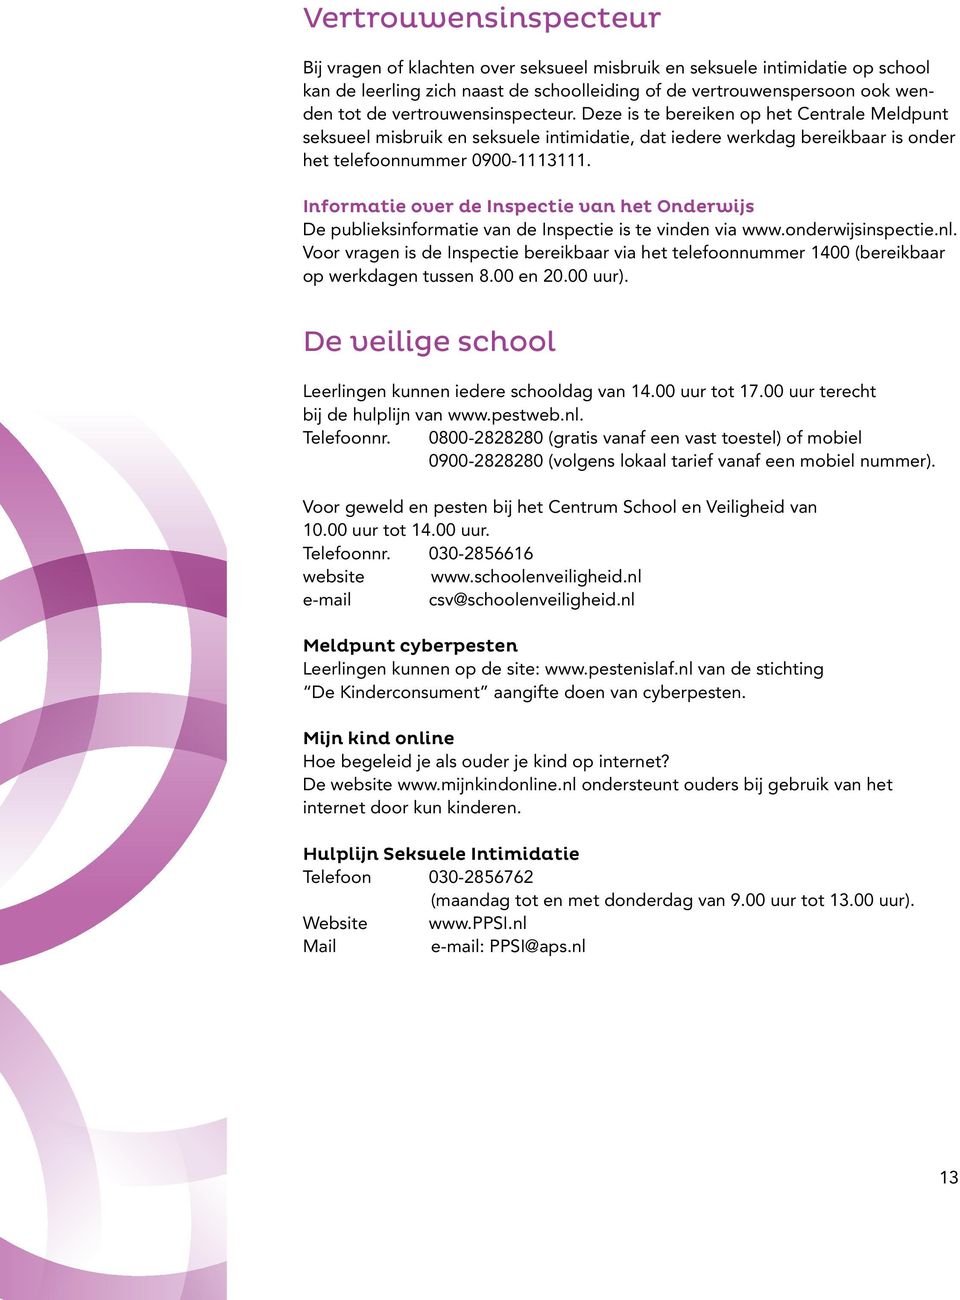 Informatie over de Inspectie van het Onderwijs De publieksinformatie van de Inspectie is te vinden via www.onderwijsinspectie.nl.